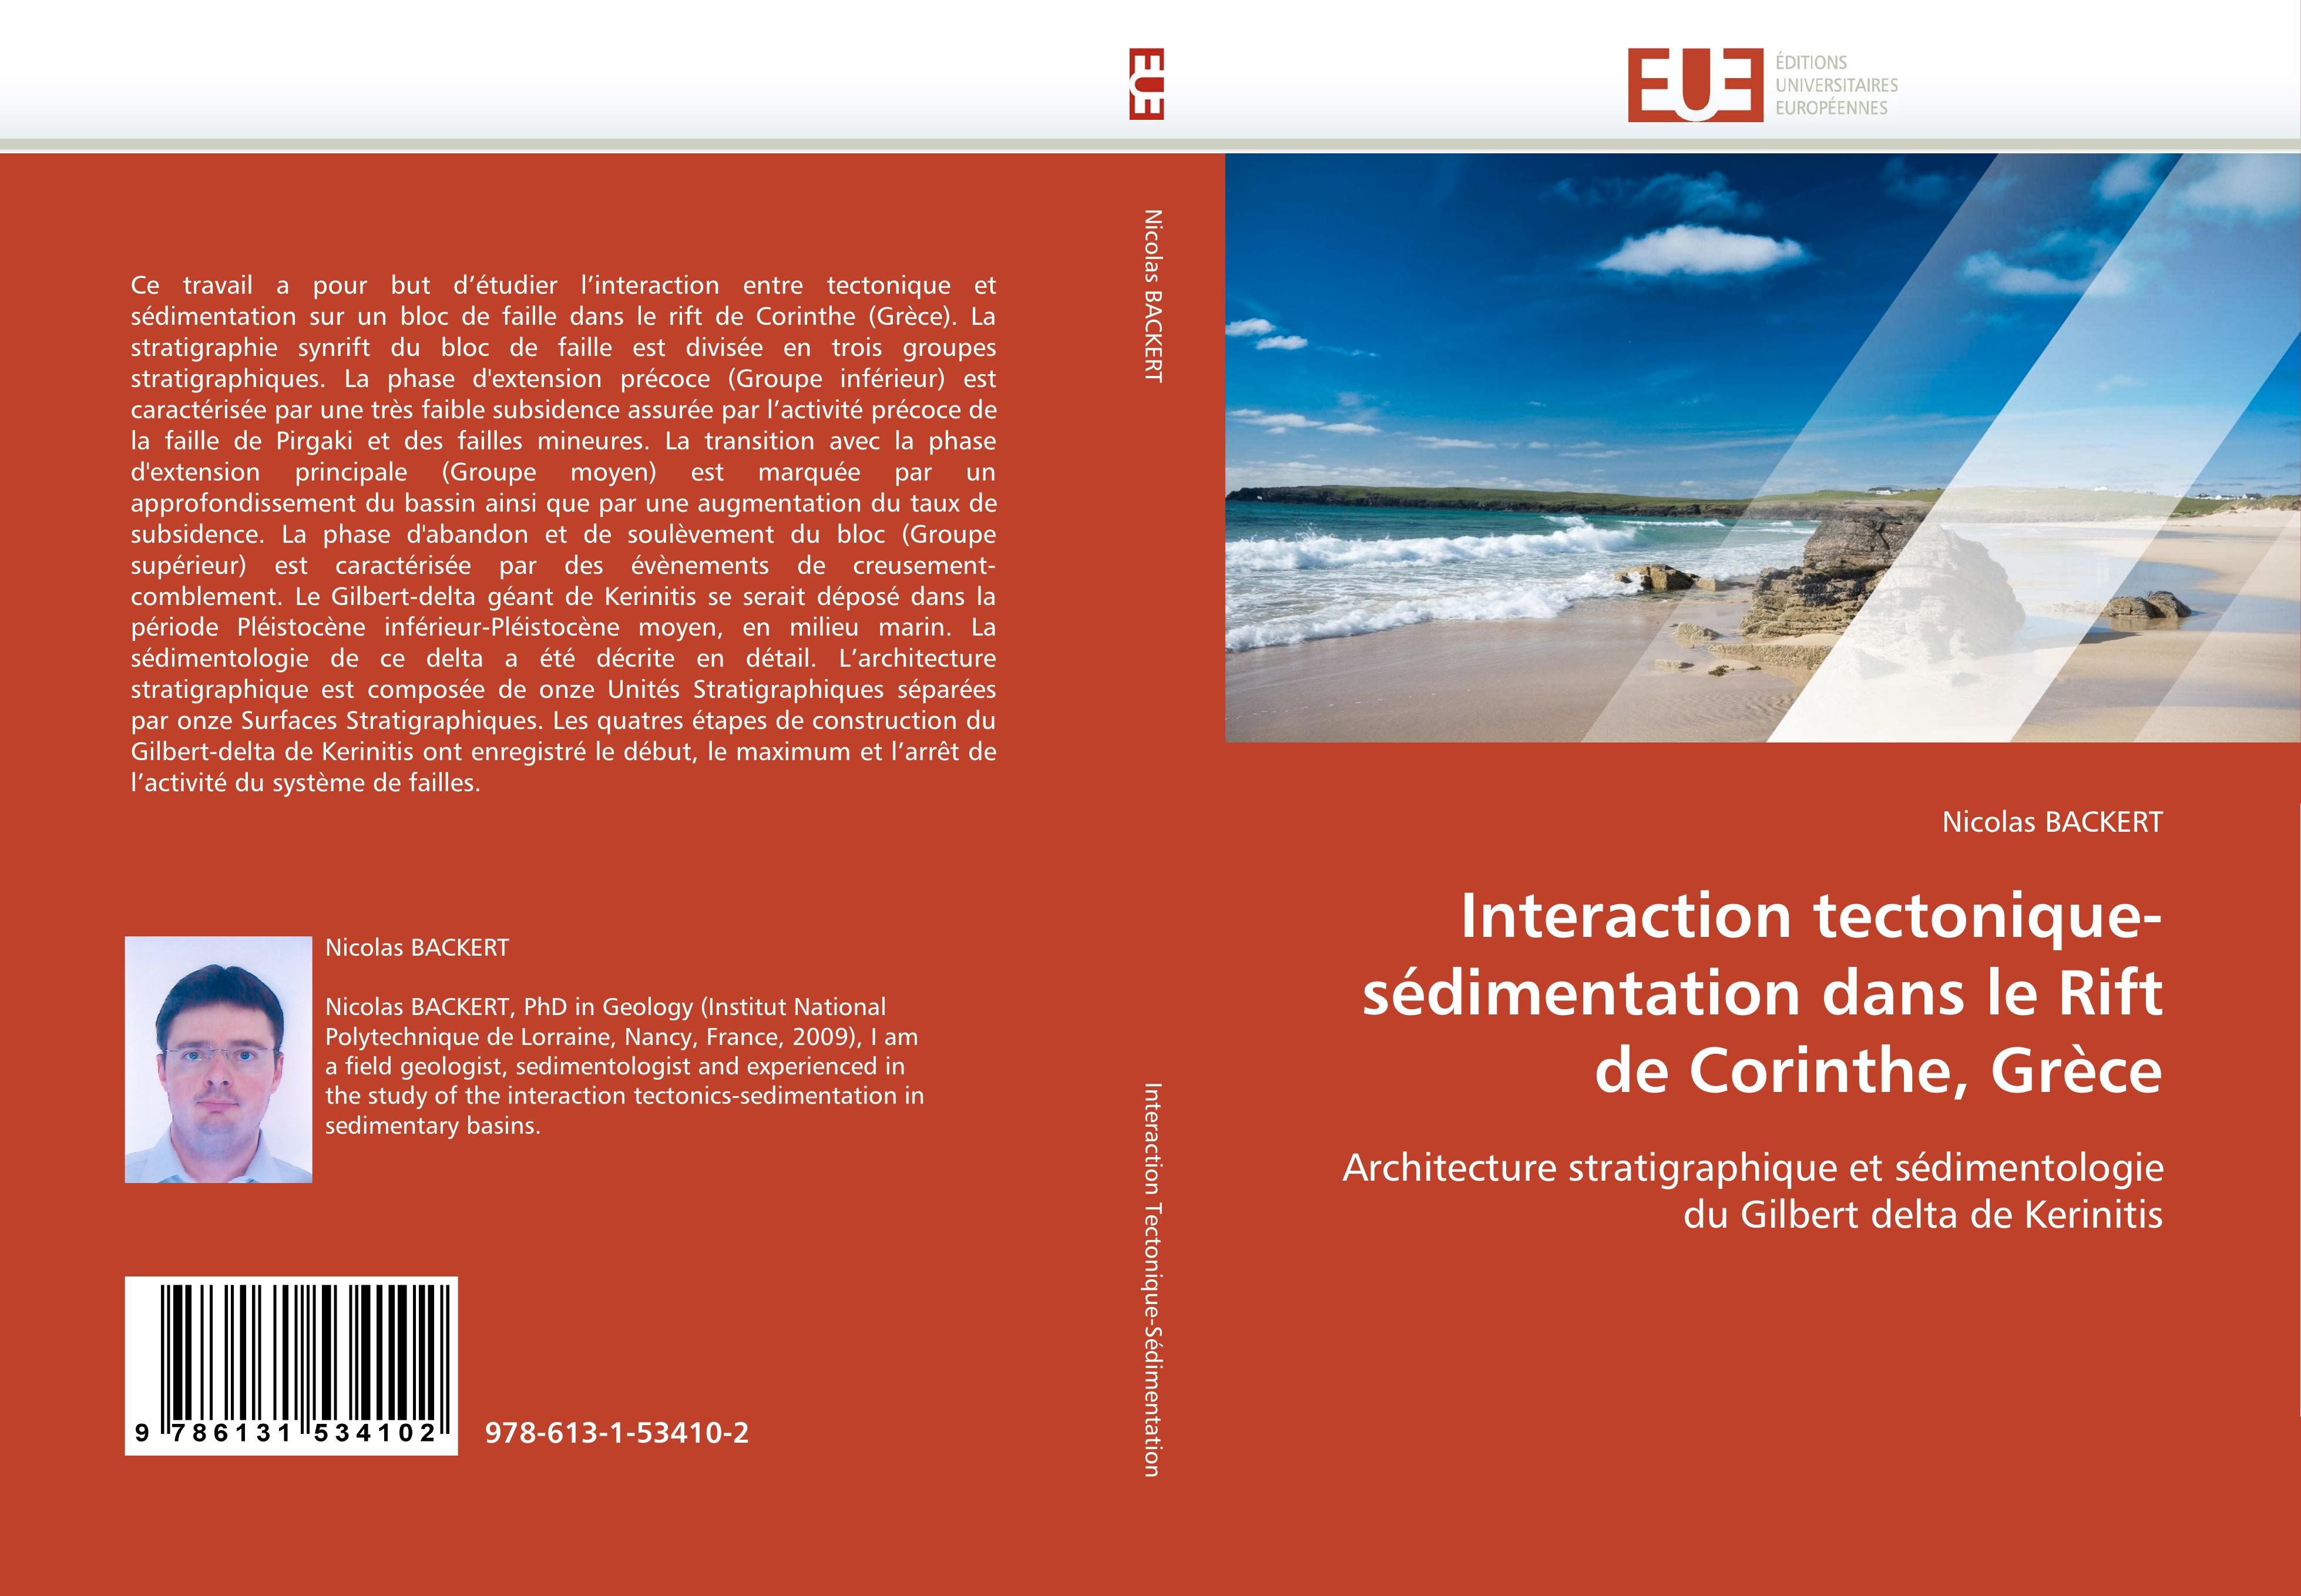 Interaction tectonique-sÃ©dimentation dans le Rift de Corinthe, GrÃ¨ce - Nicolas BACKERT